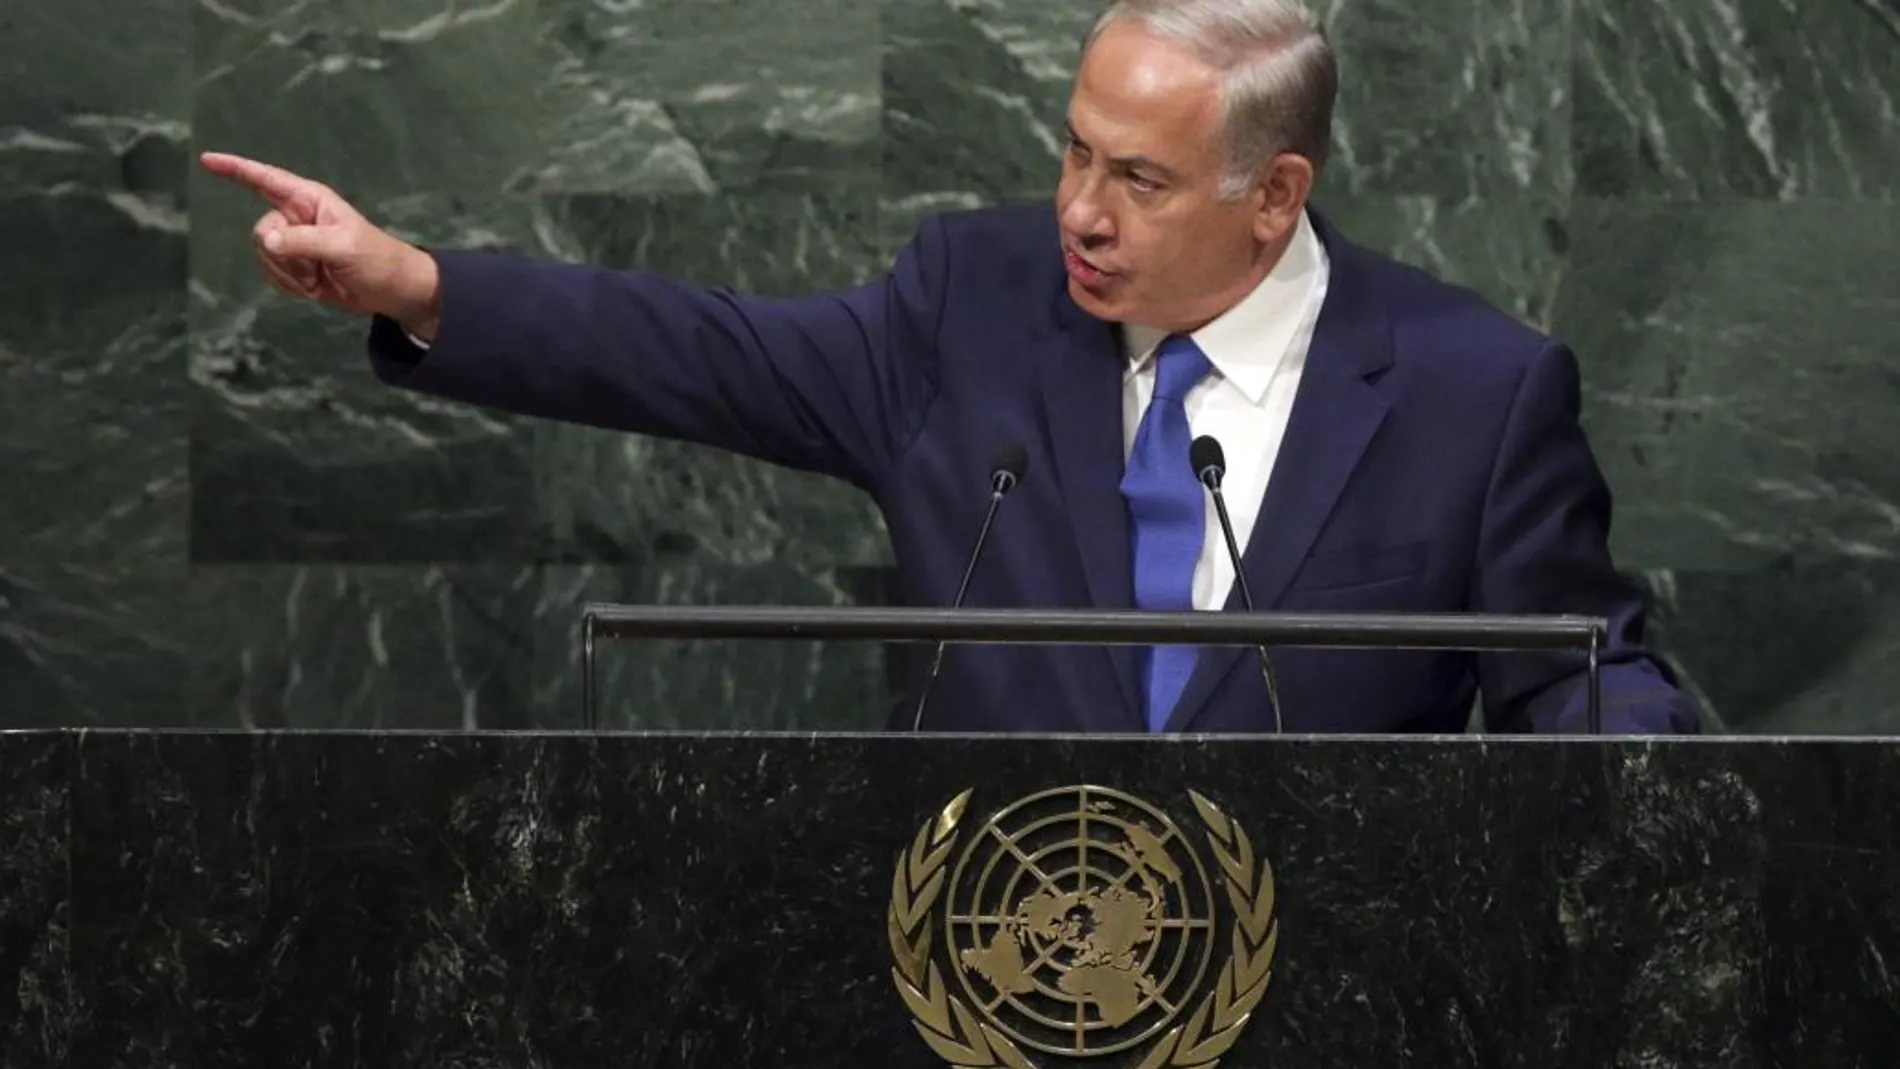 El primer ministro de Israel, Benjamin Netanyahu, interviene en la 70 Asamblea General de las Naciones Unidas hoy 1 de octubre de 2015.